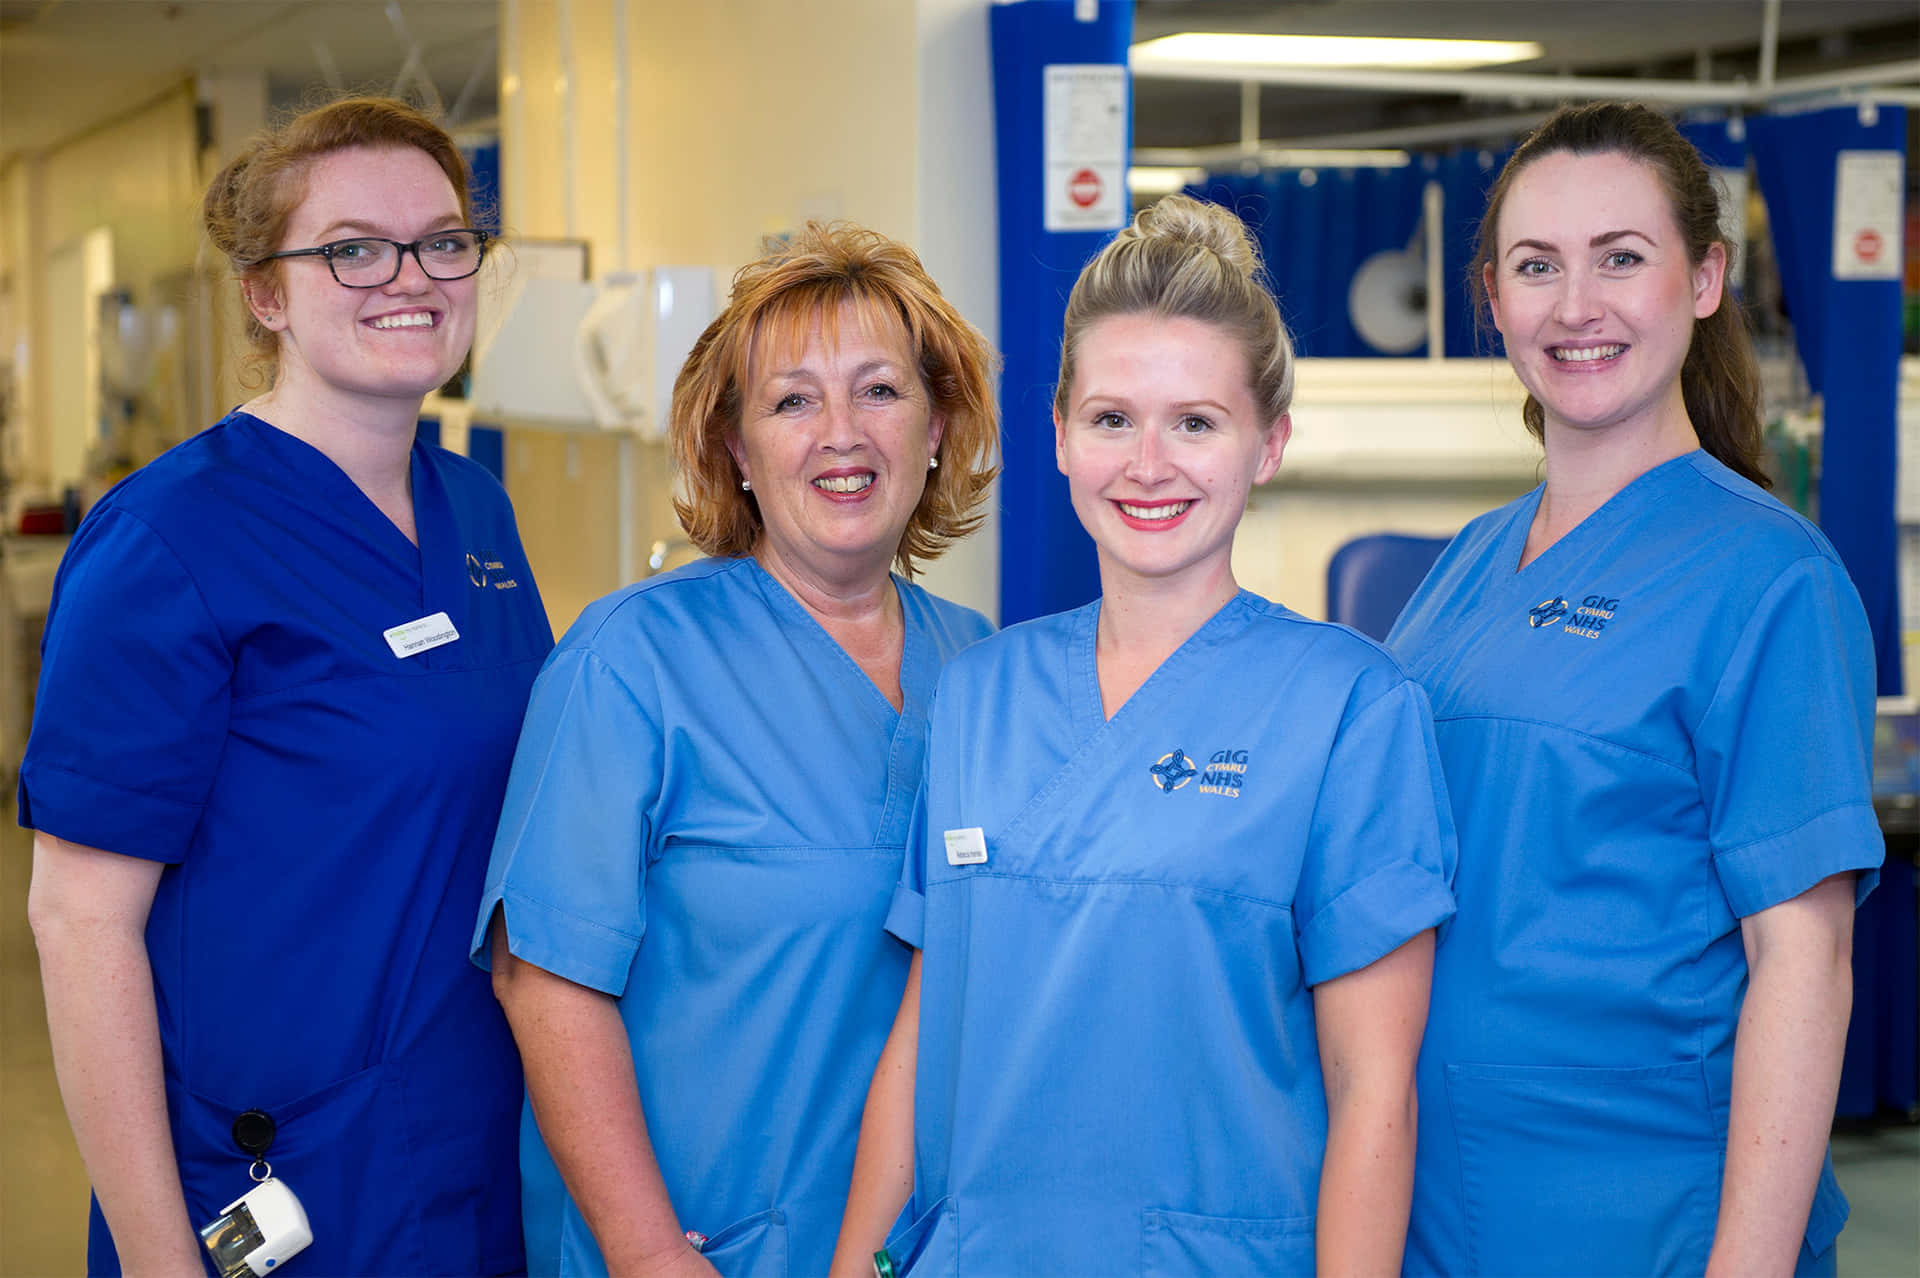 Quattroinfermiere Con Divise Blu In Piedi In Un Corridoio Dell'ospedale